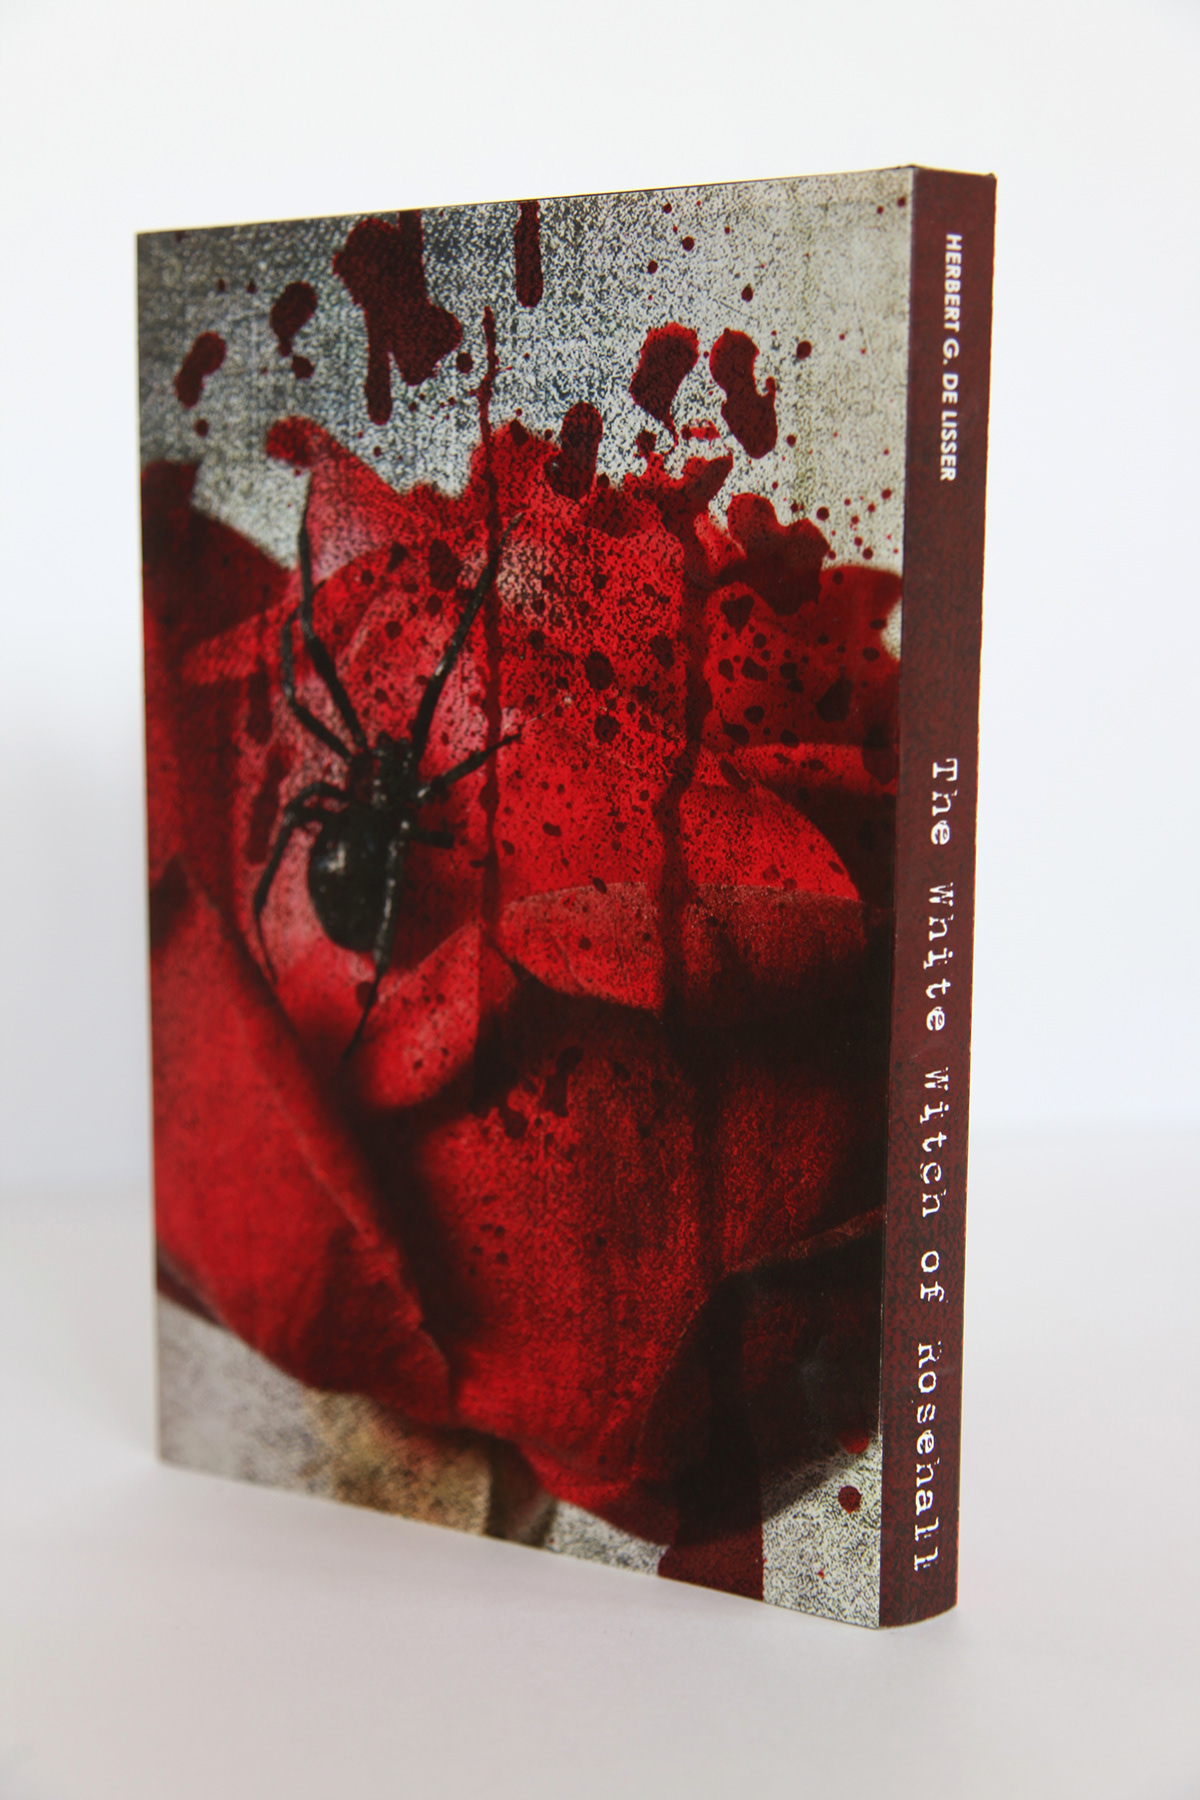 book design red blood widow spider splatter voodoo doll dark Magic   mystery Century rose witch White